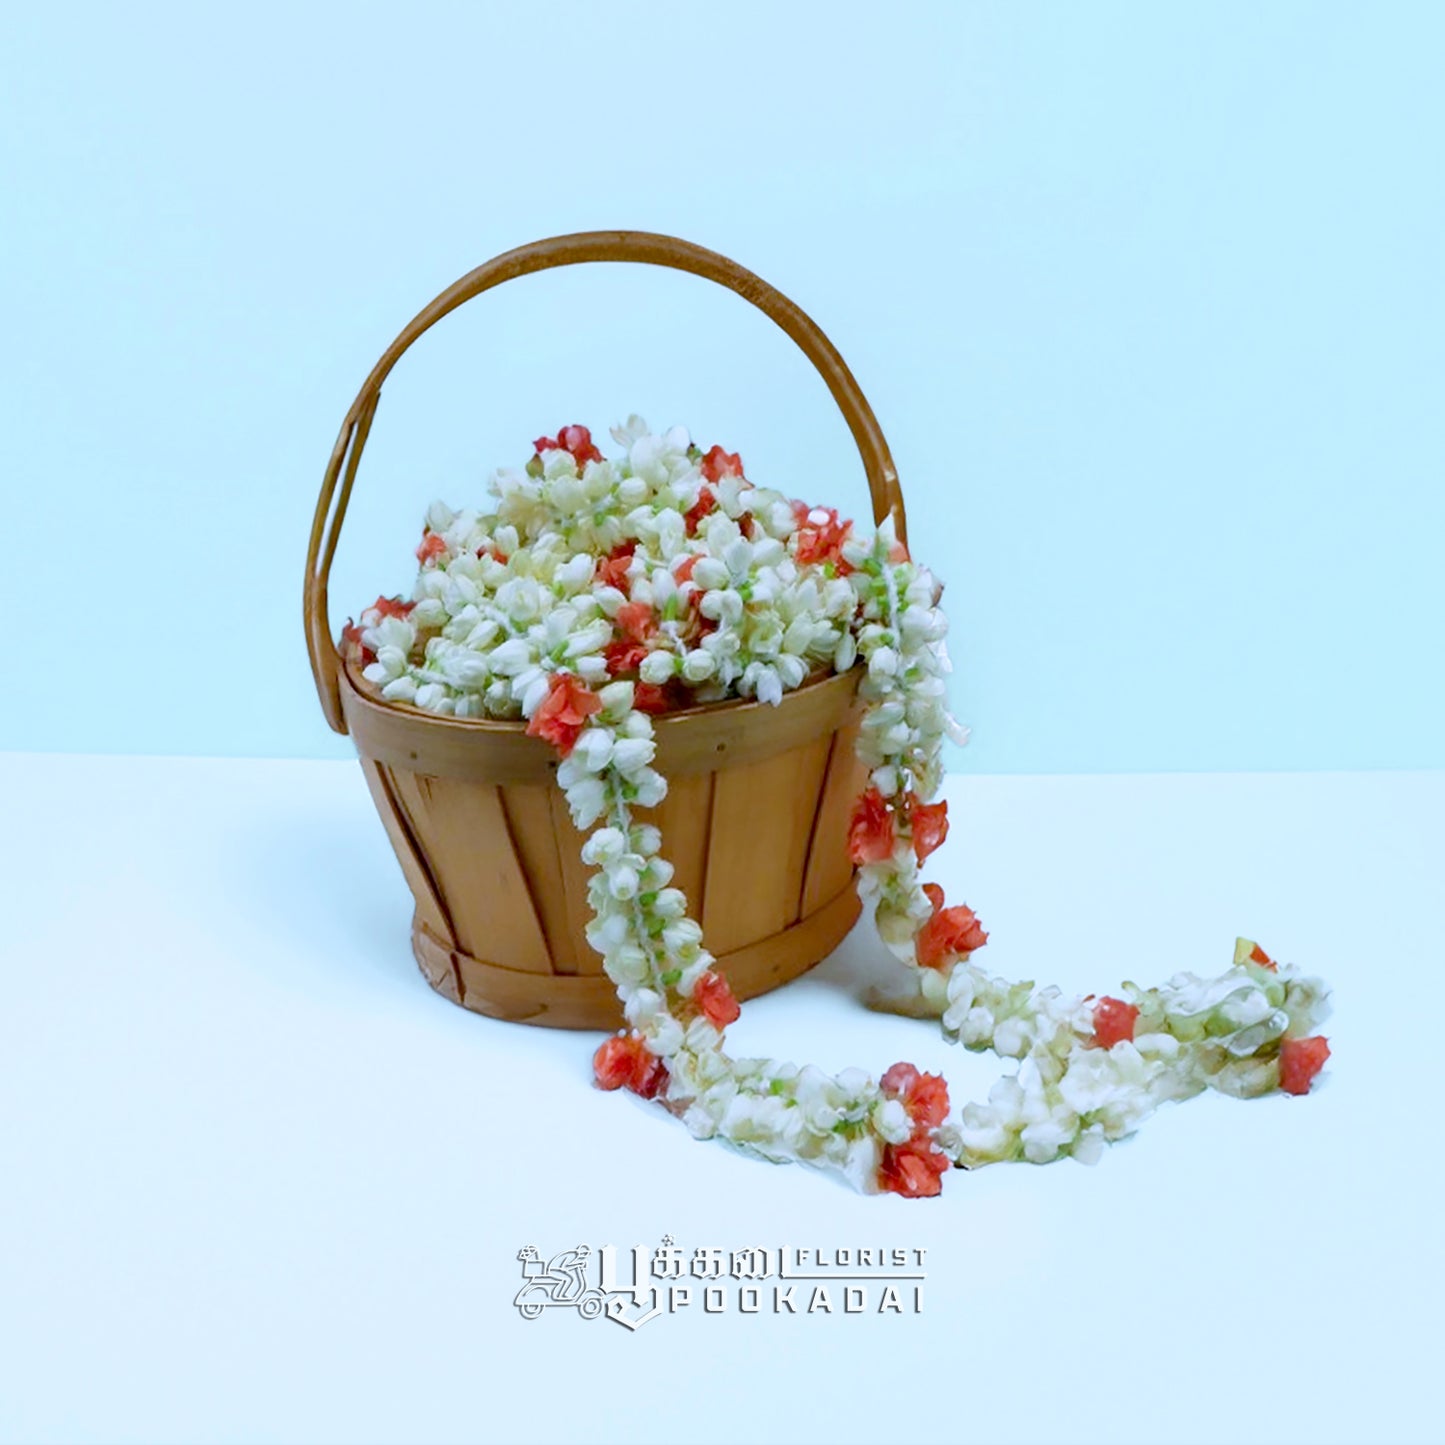 Fresh Jasmine & Kanakamparam Strings - Pookadai Florist Toronto